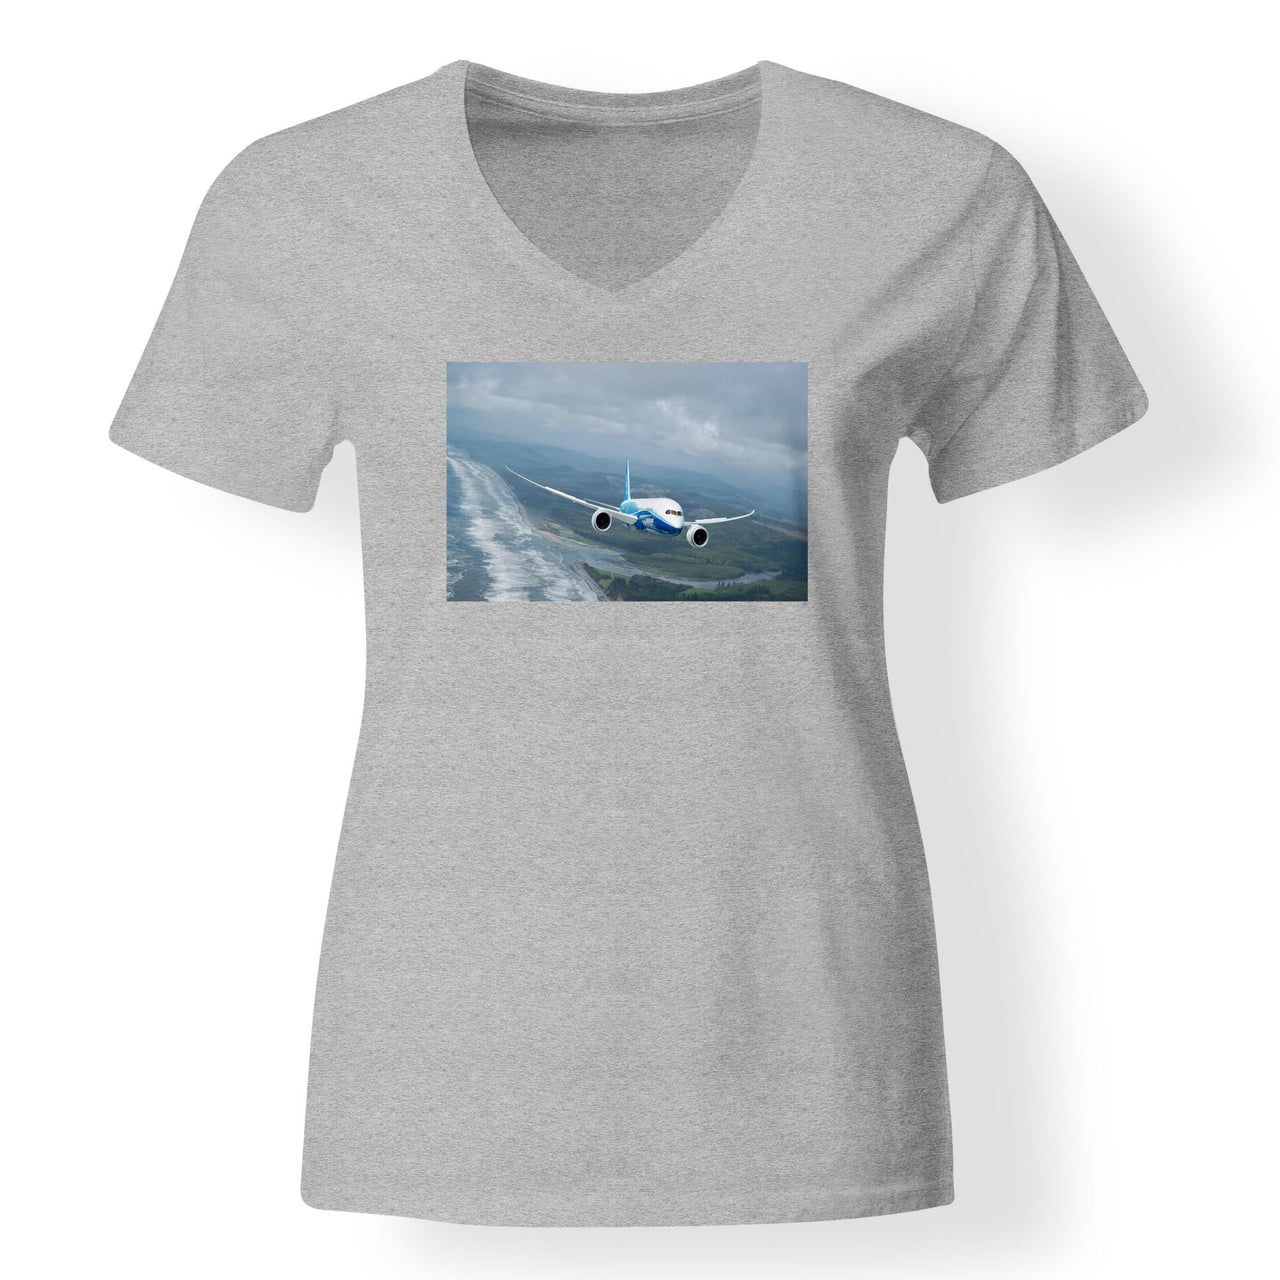 Cruising Boeing 787 Designed V-Neck T-Shirts